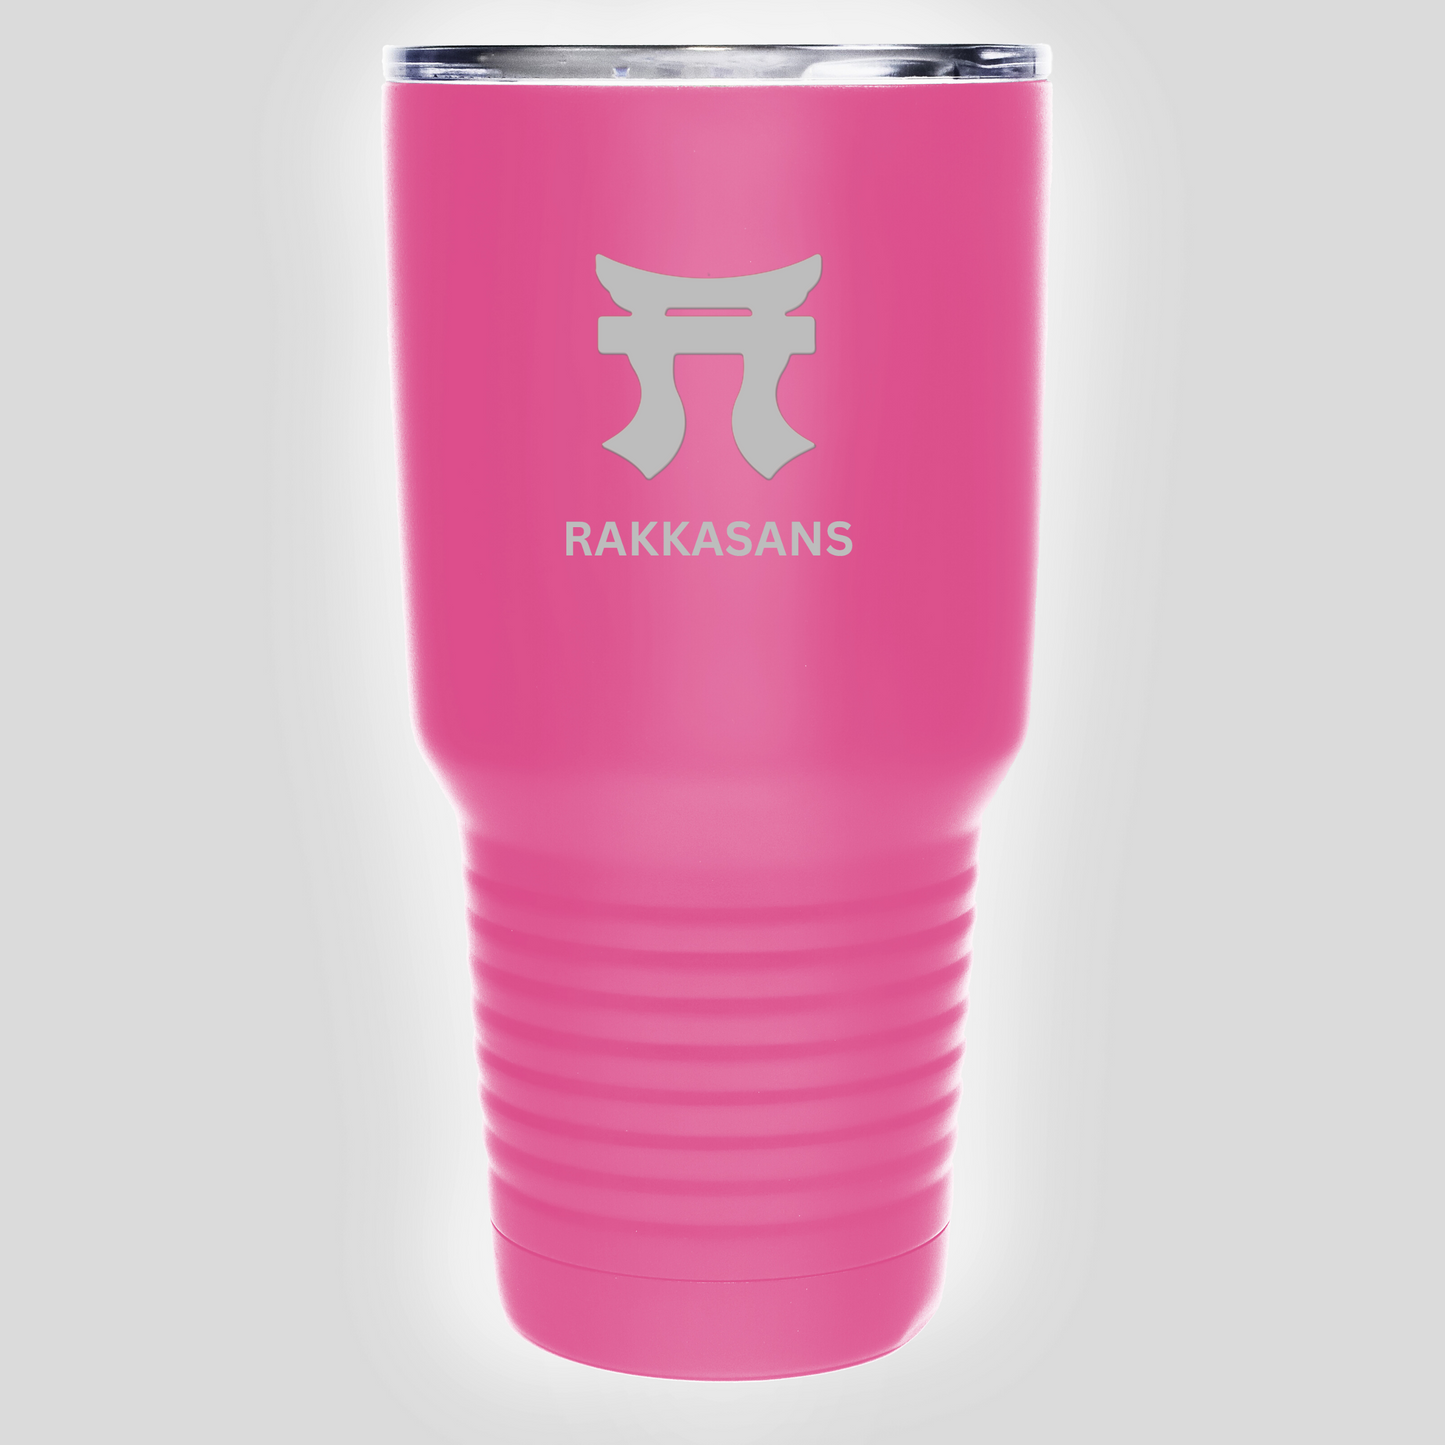 "Pink Rakkasans 30oz Stainless Steel Tumbler with Laser Engraved Design."